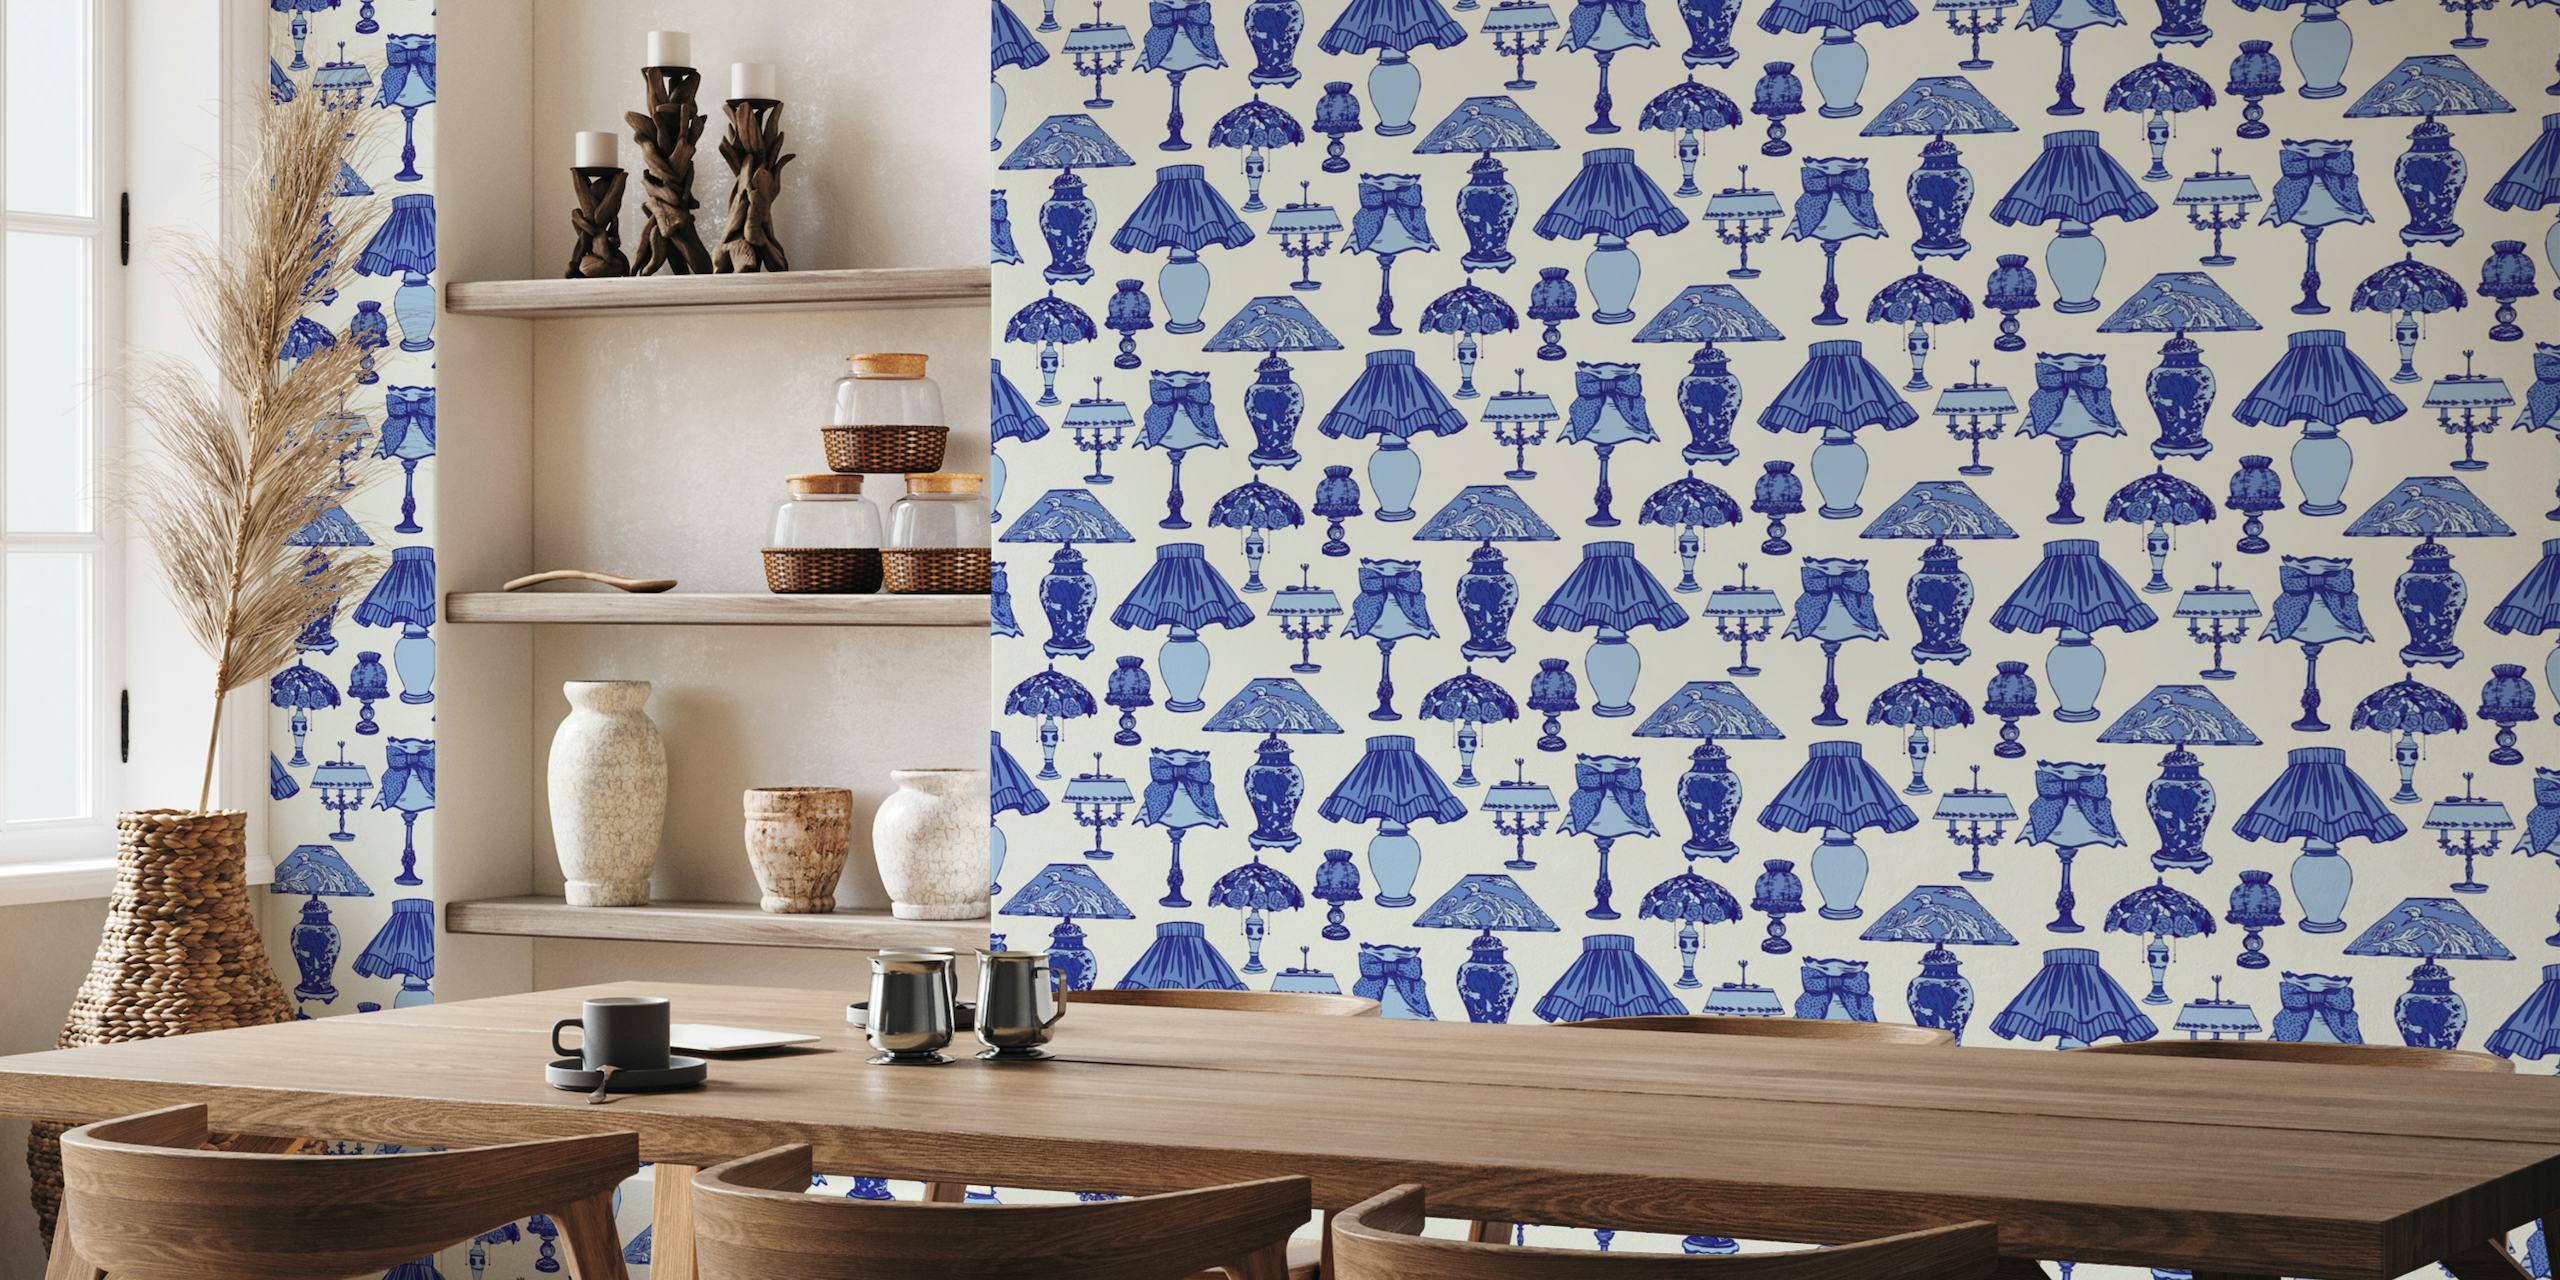 Blå Delft dekorative lamper mønster veggmaleri for kjøkkeninnredning